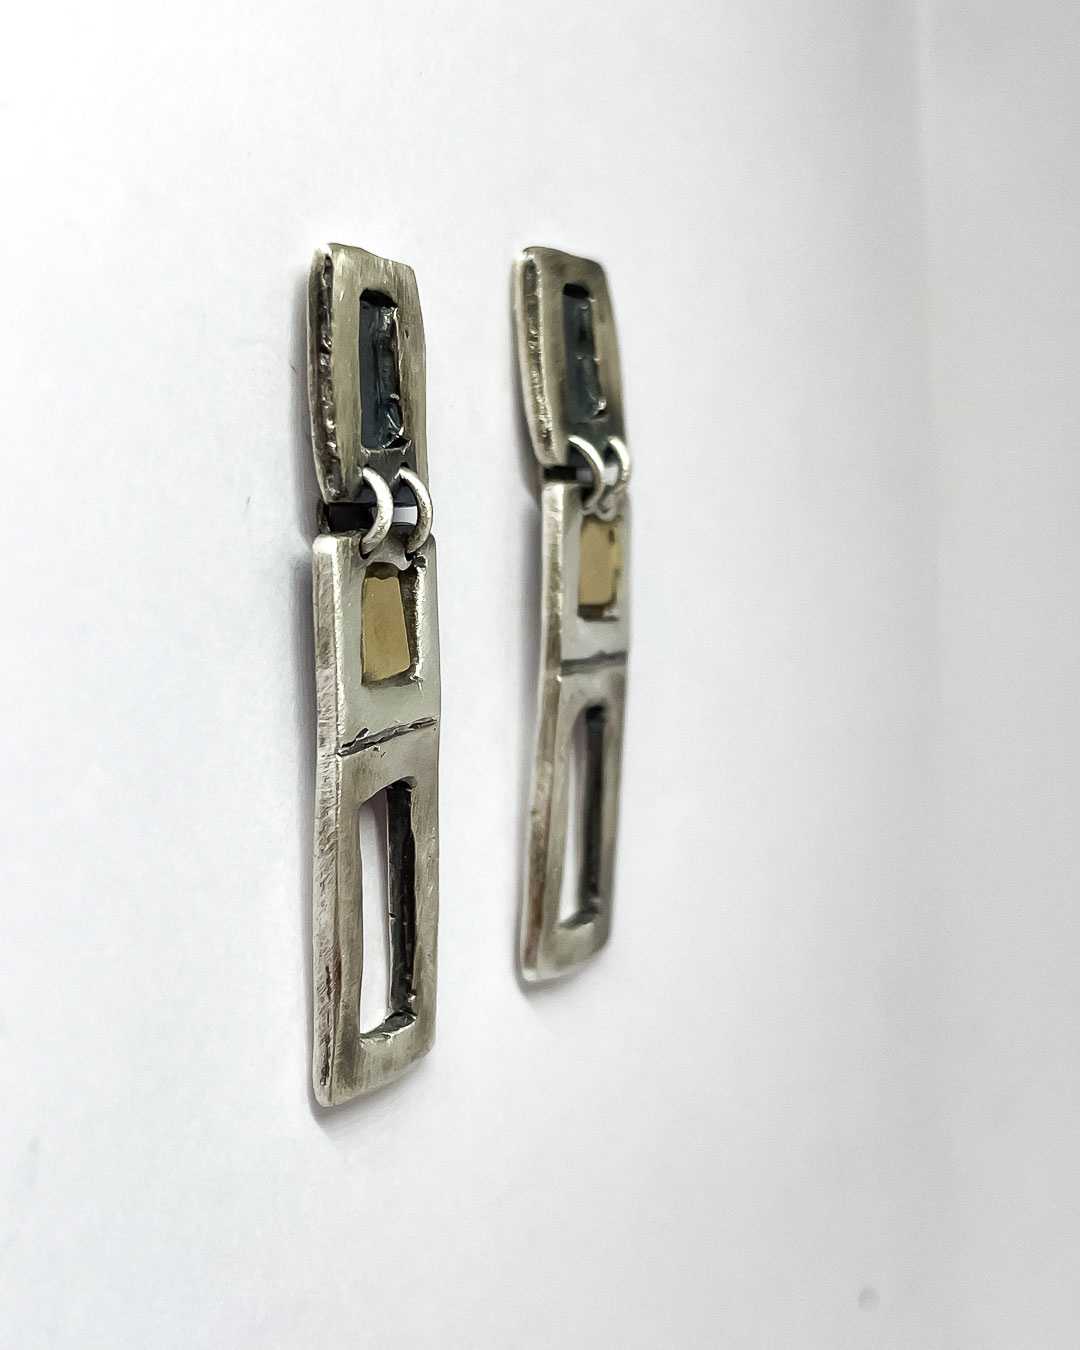 Modernist Earrings No. 8 - Geometric Cutout Drop Earrings in Oxidisded Sterling Silver + 18ct Gold